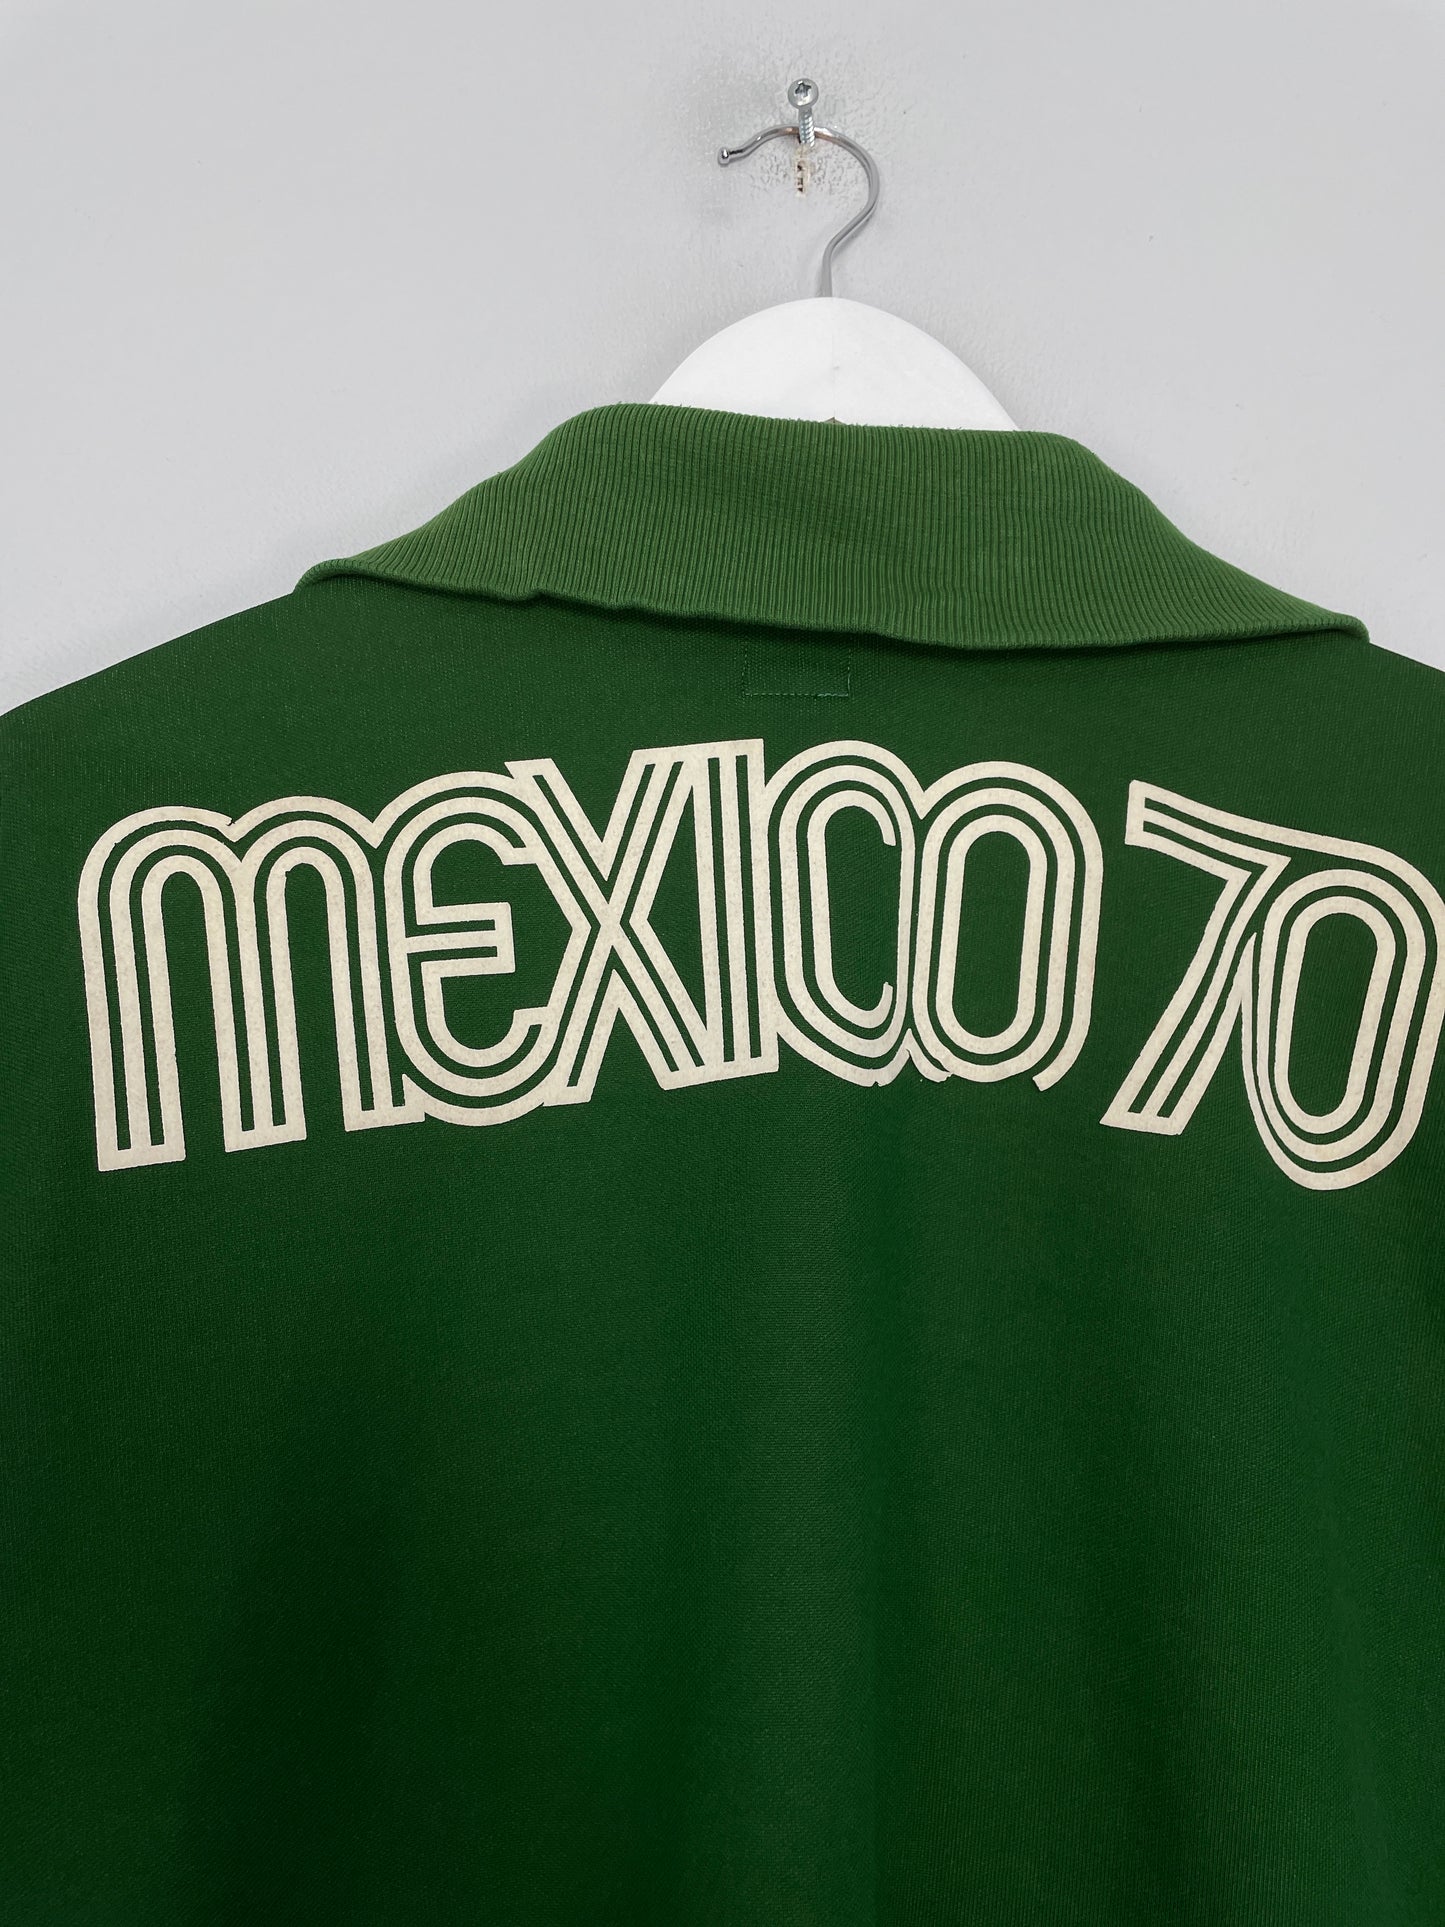 1970 MEXICO *ADIDAS ORIGINALS* TRACK JACKET (L)